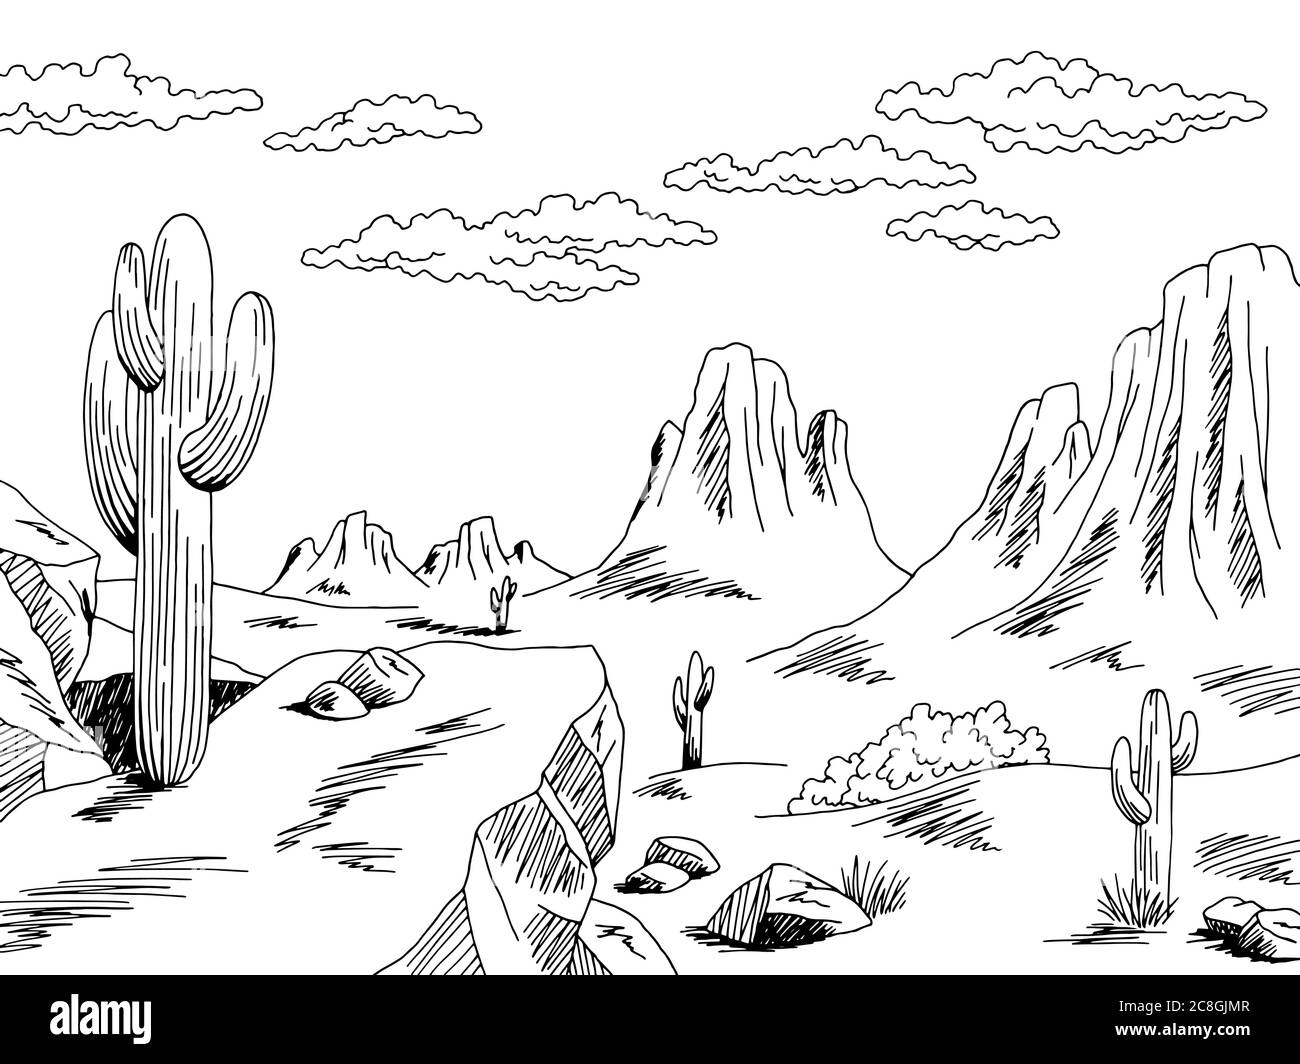 Prairie Grafik schwarz weiß wild Westen Wüste Landschaft Skizze Illustration Vektor Stock Vektor